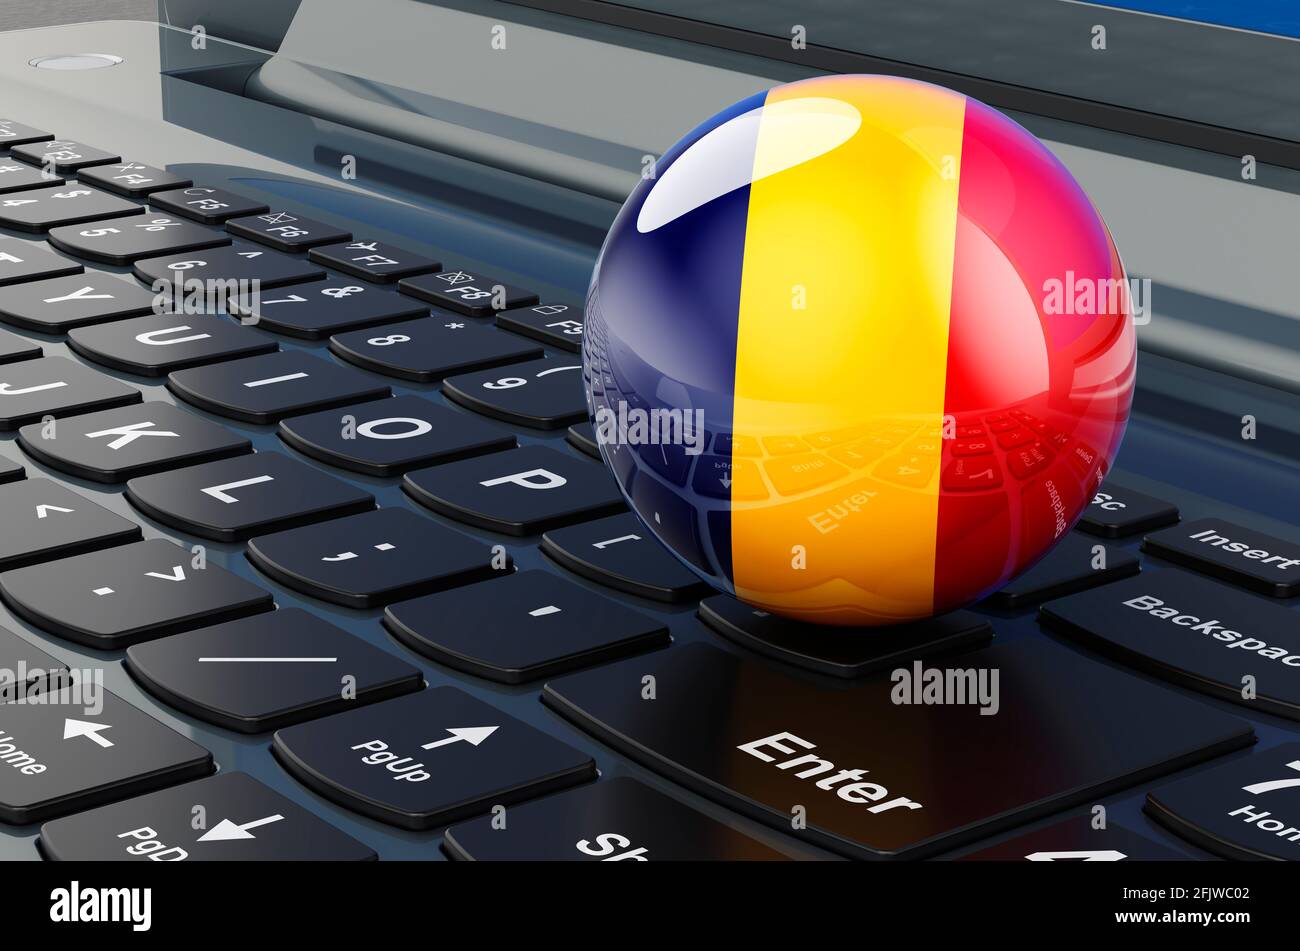 Rumänische Flagge auf der Laptop-Tastatur. Online-Geschäft, E-Bildung,  Einkaufen in Rumänien Konzept. 3D-Rendering Stockfotografie - Alamy